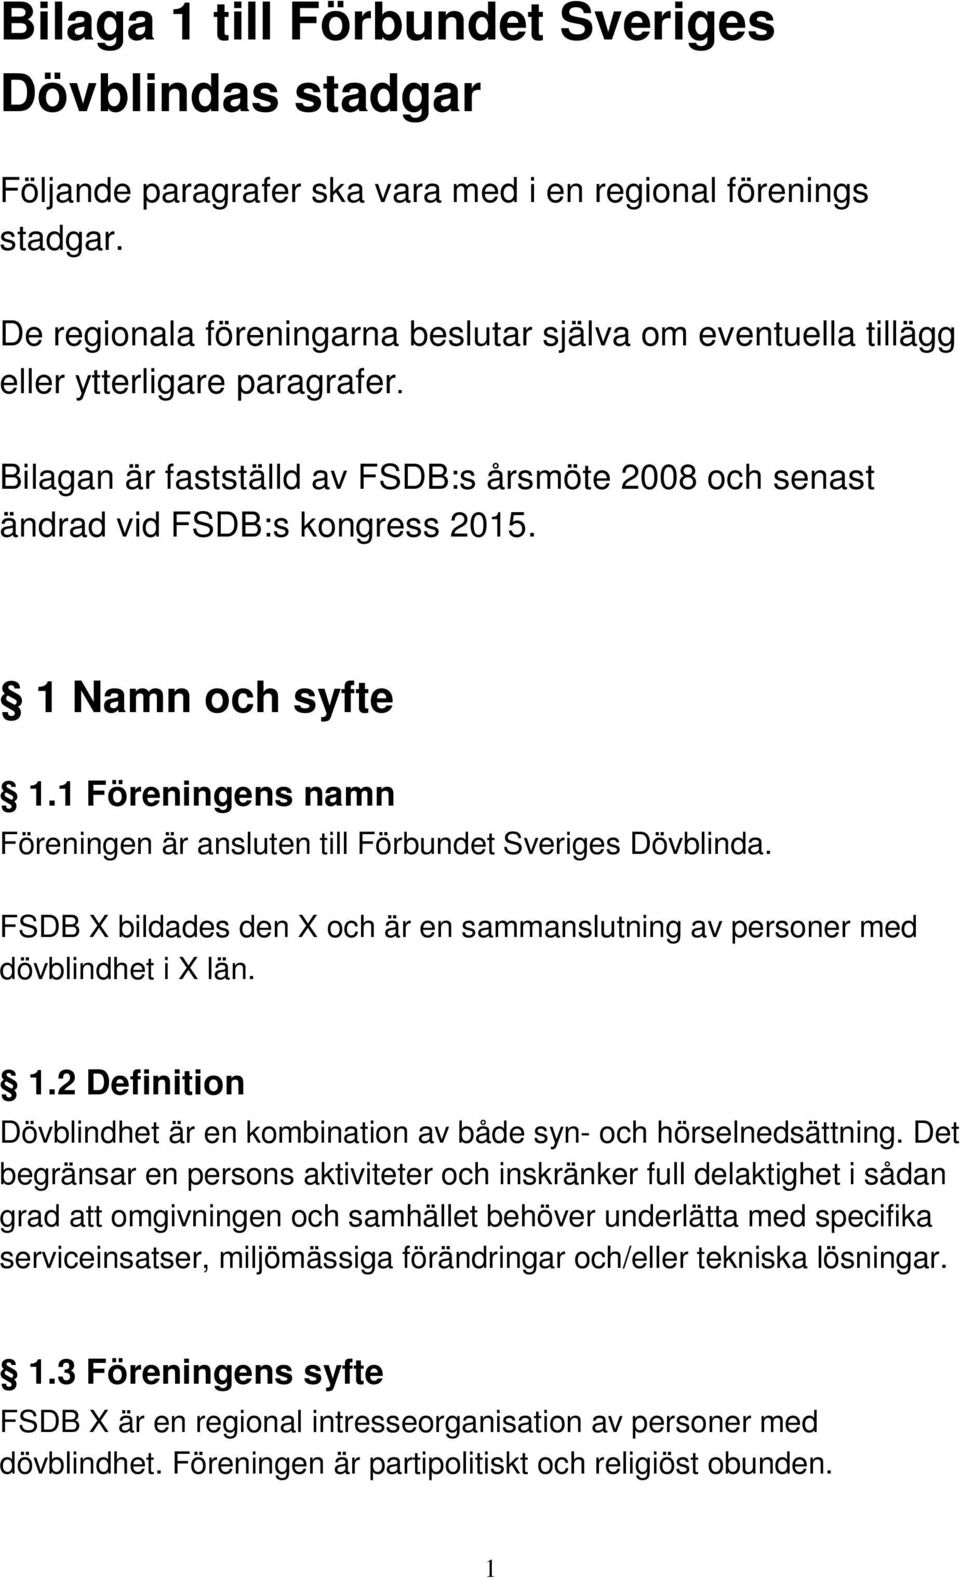 1 Namn och syfte 1.1 Föreningens namn Föreningen är ansluten till Förbundet Sveriges Dövblinda. FSDB X bildades den X och är en sammanslutning av personer med dövblindhet i X län. 1.2 Definition Dövblindhet är en kombination av både syn- och hörselnedsättning.